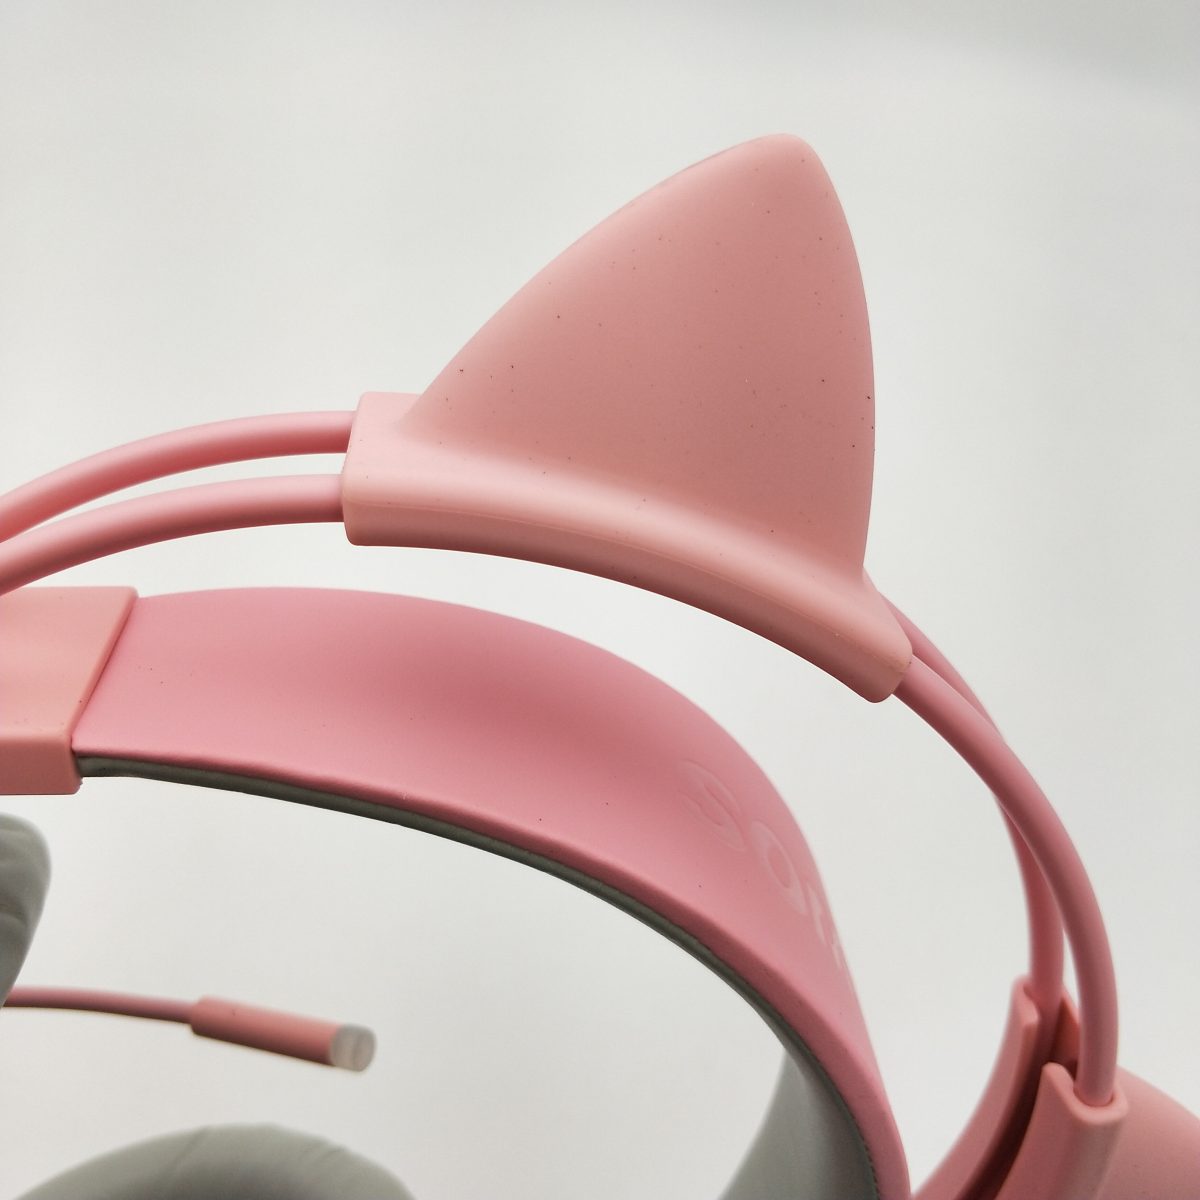 超萌系電競耳機!PINK貓耳耳機(電競版)完整開箱，讓女友一起加入戰場吧! - 電腦耳機 - 敗家達人推薦